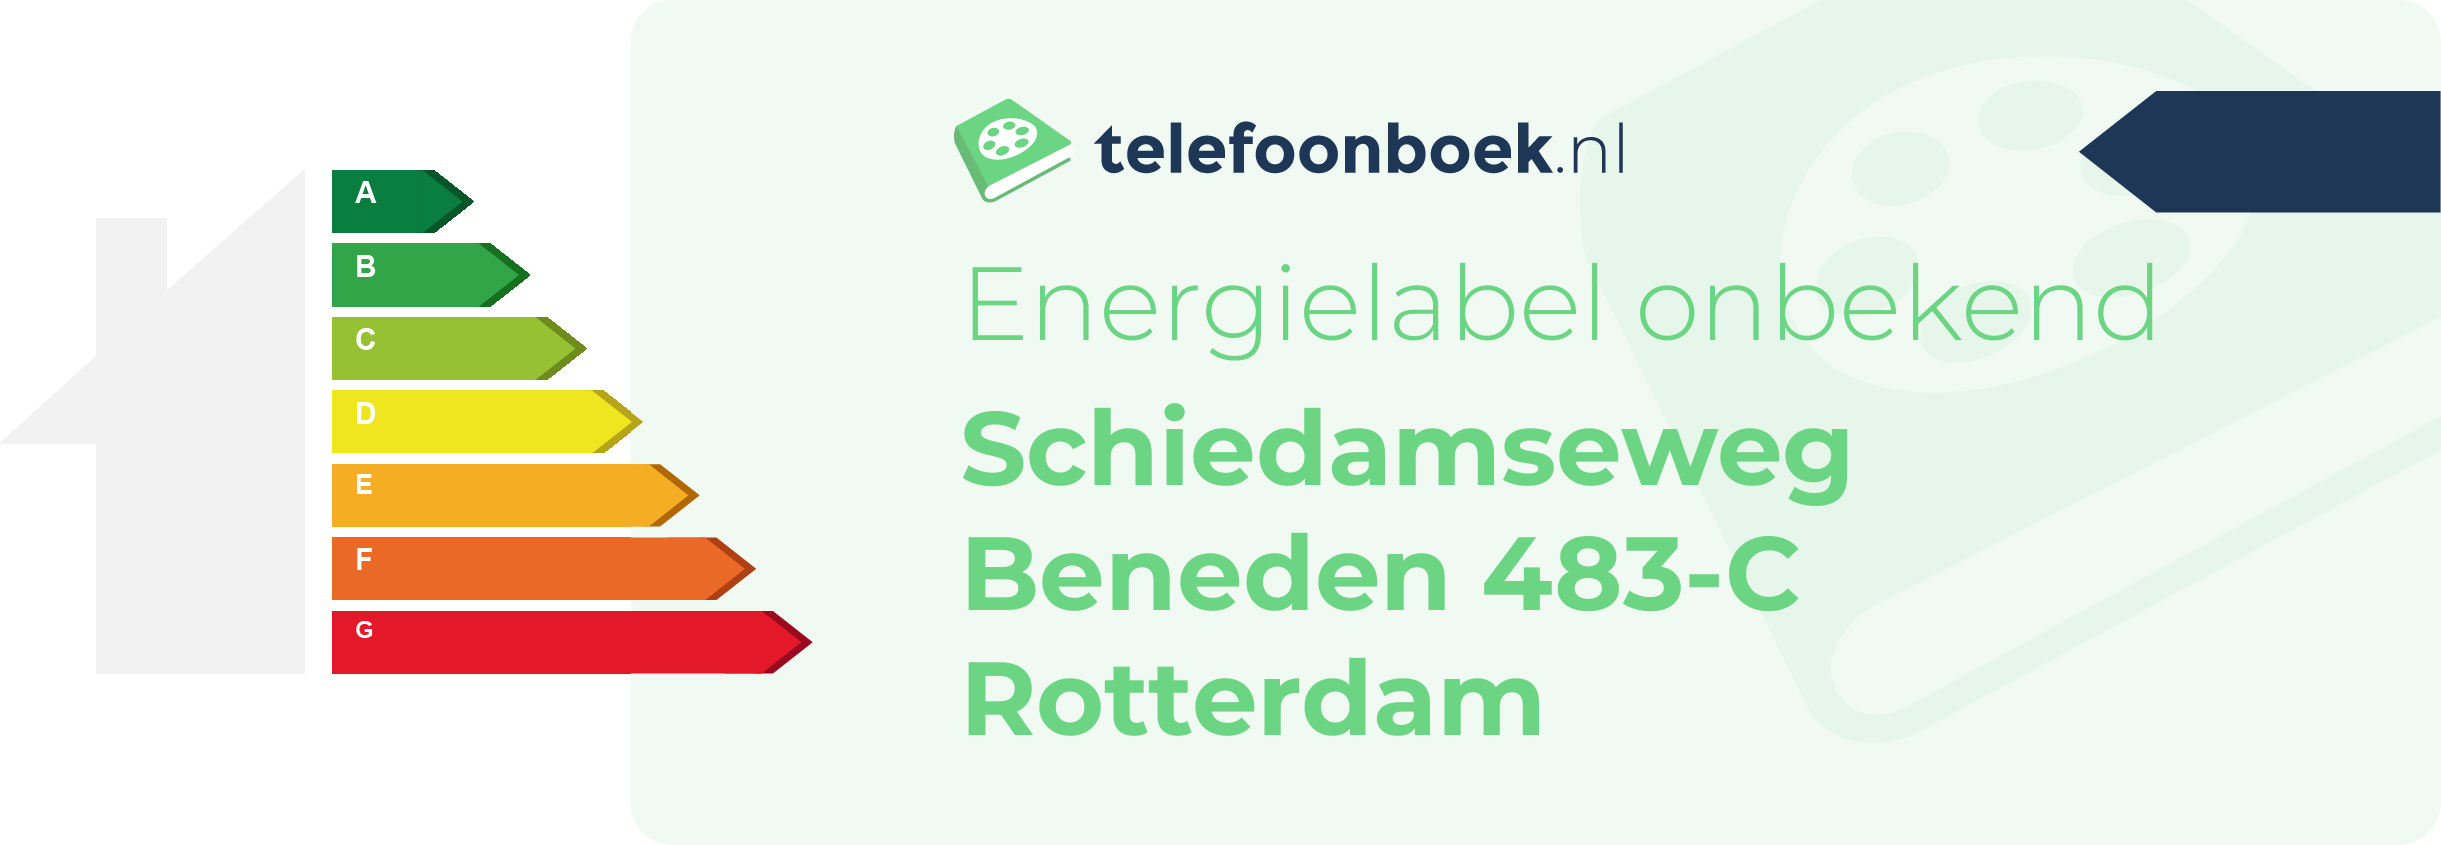 Energielabel Schiedamseweg Beneden 483-C Rotterdam